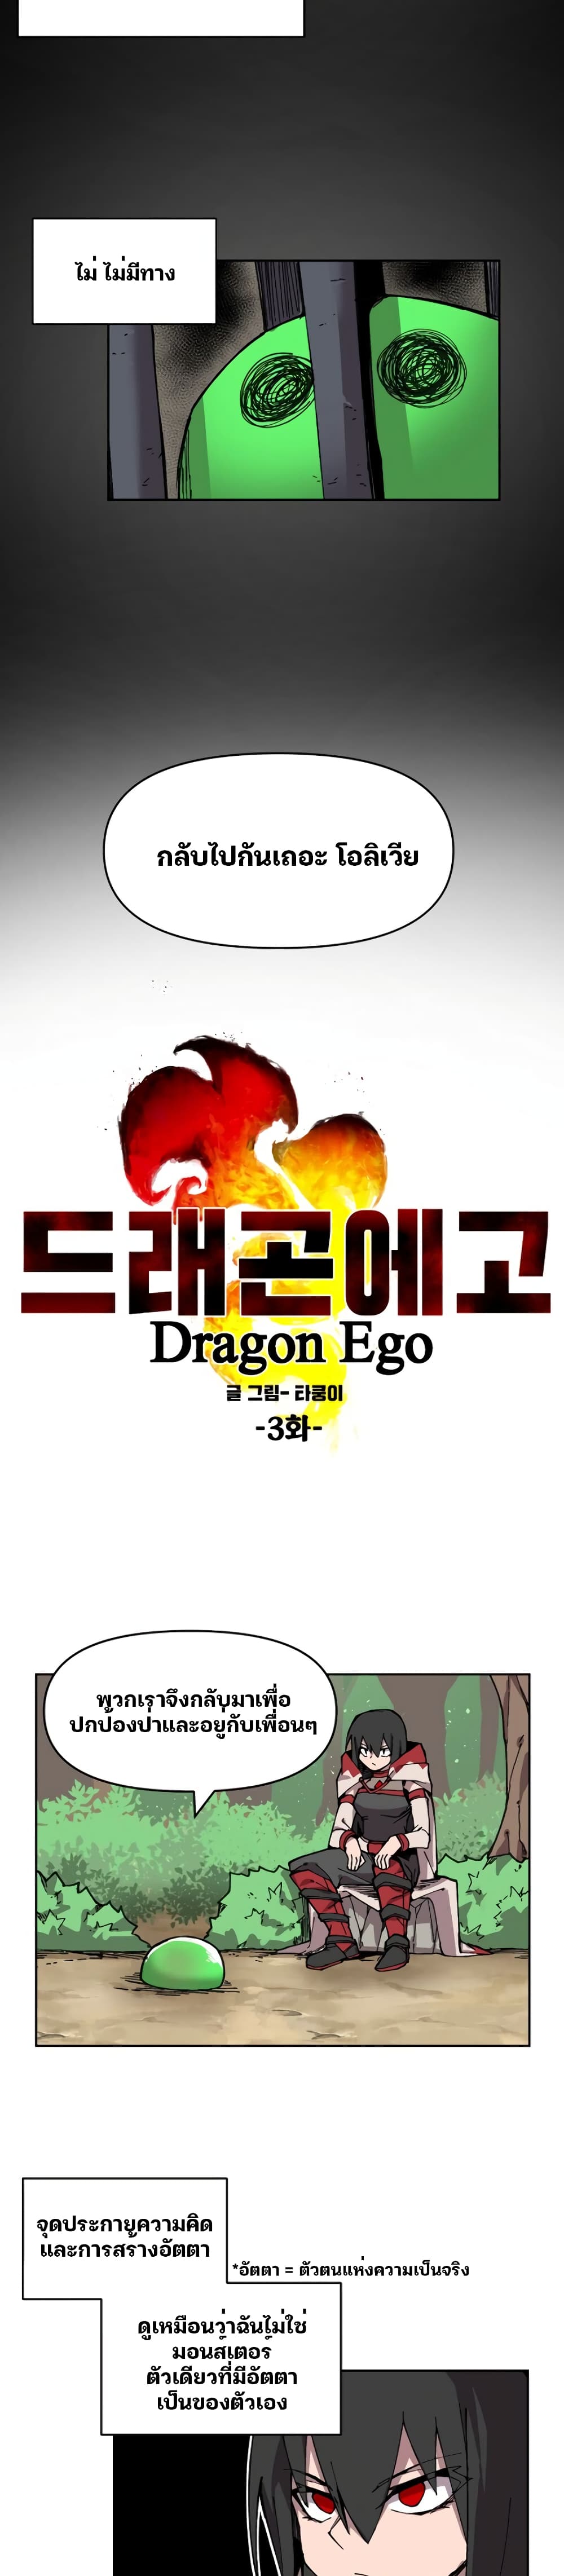 Dragon Ego 3 09